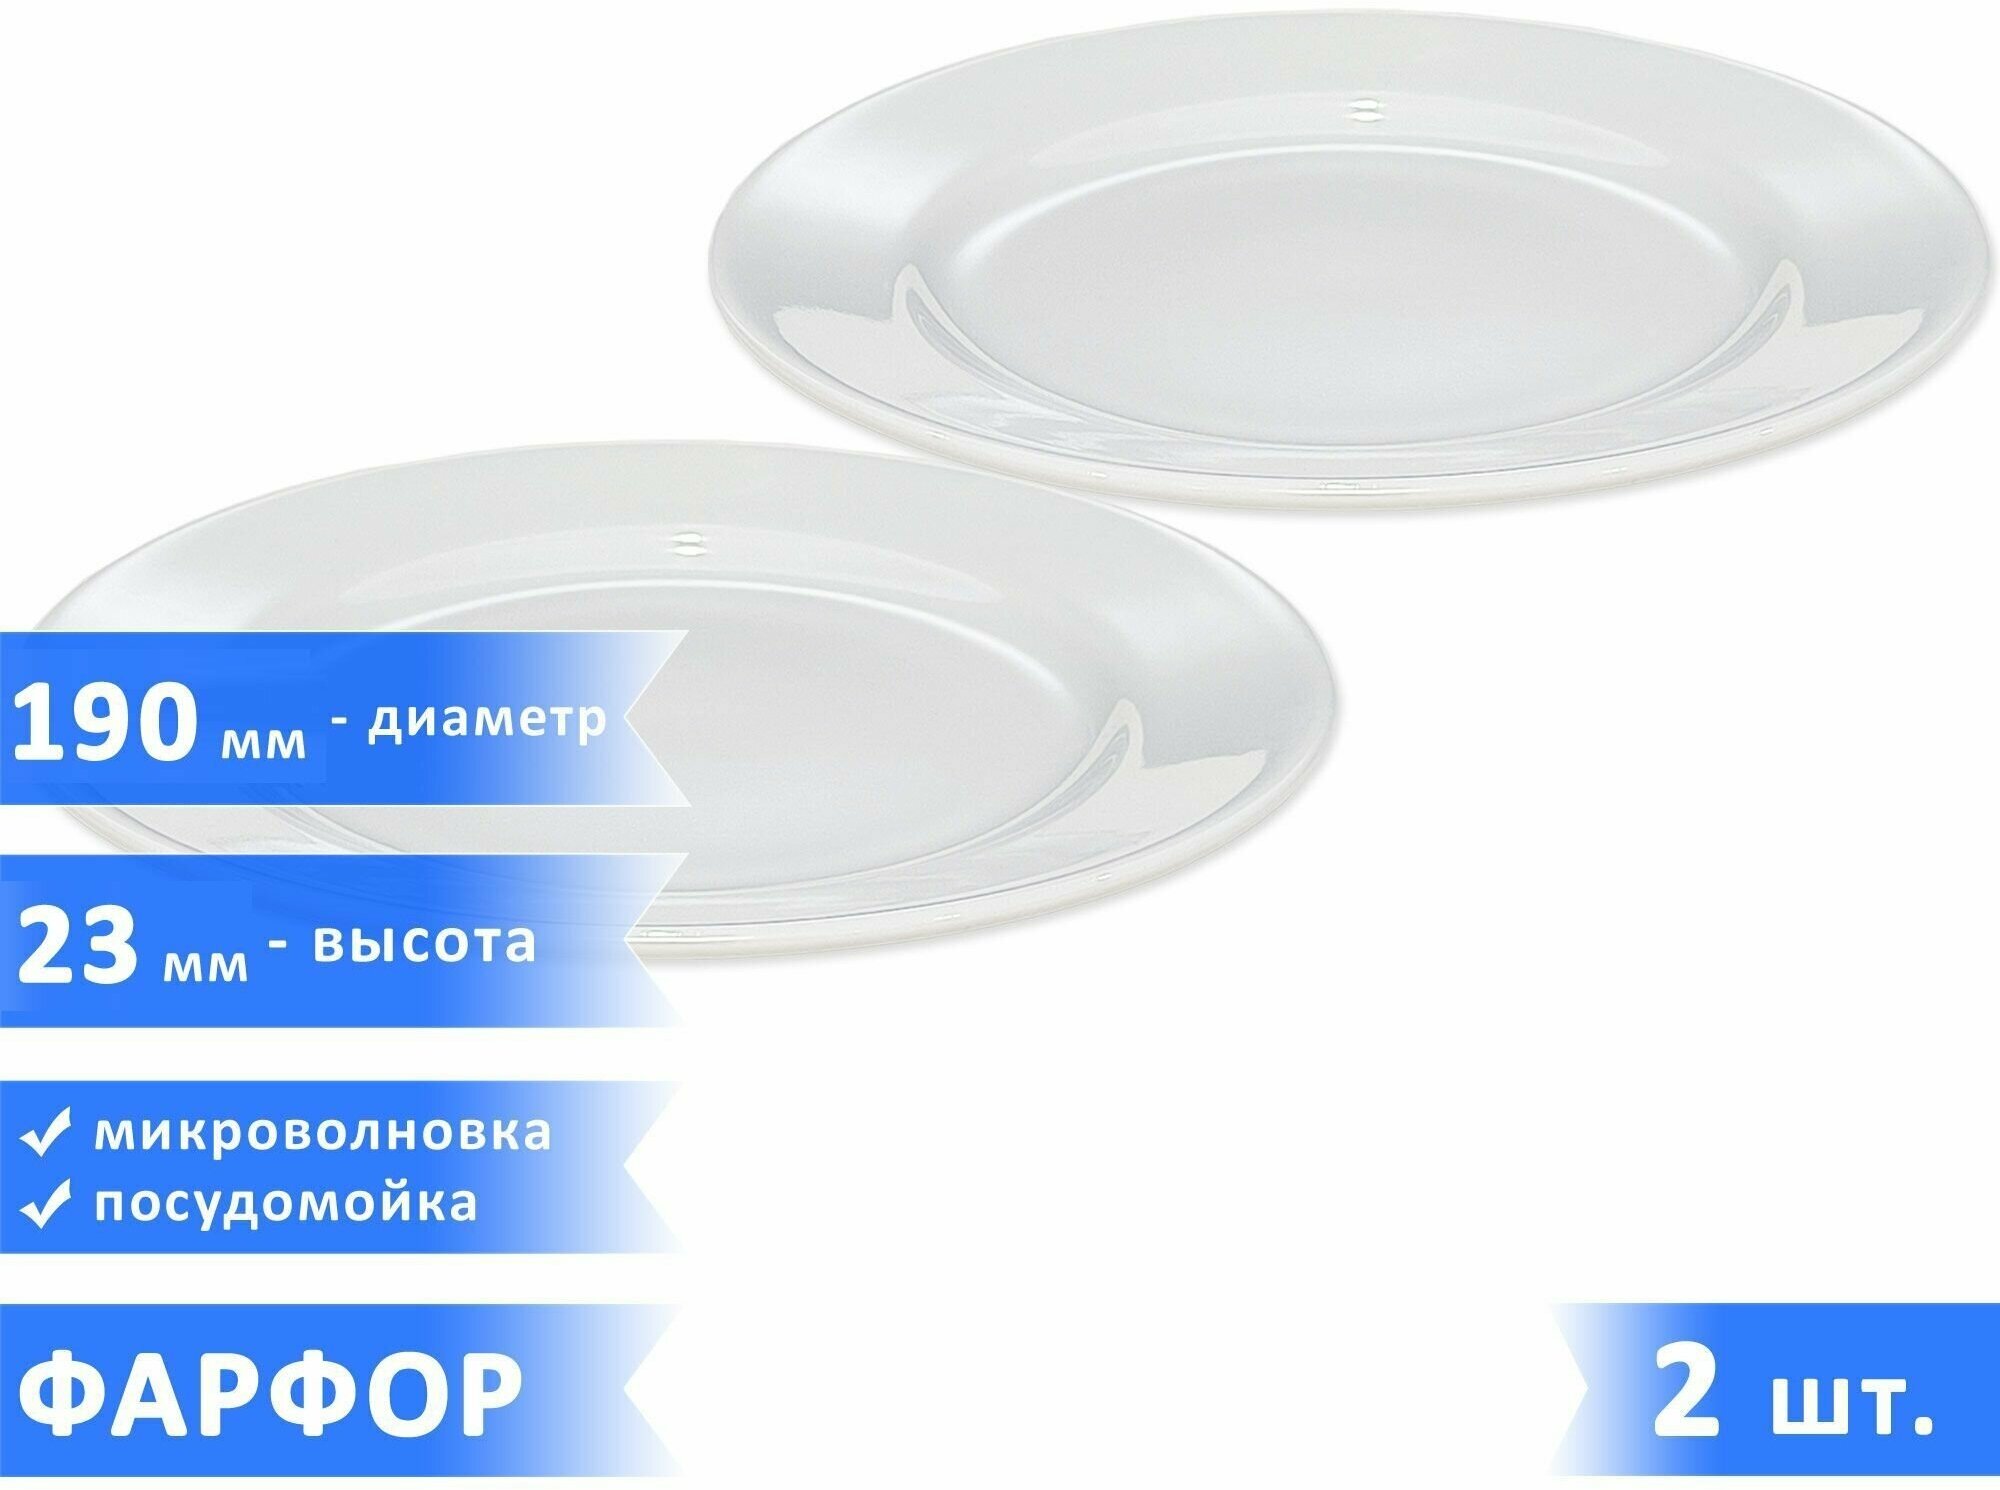 Набор плоских десертных/закусочных тарелок "Тренд", фарфор, диаметр 19 см, высота 23 мм, белые, 2 шт.